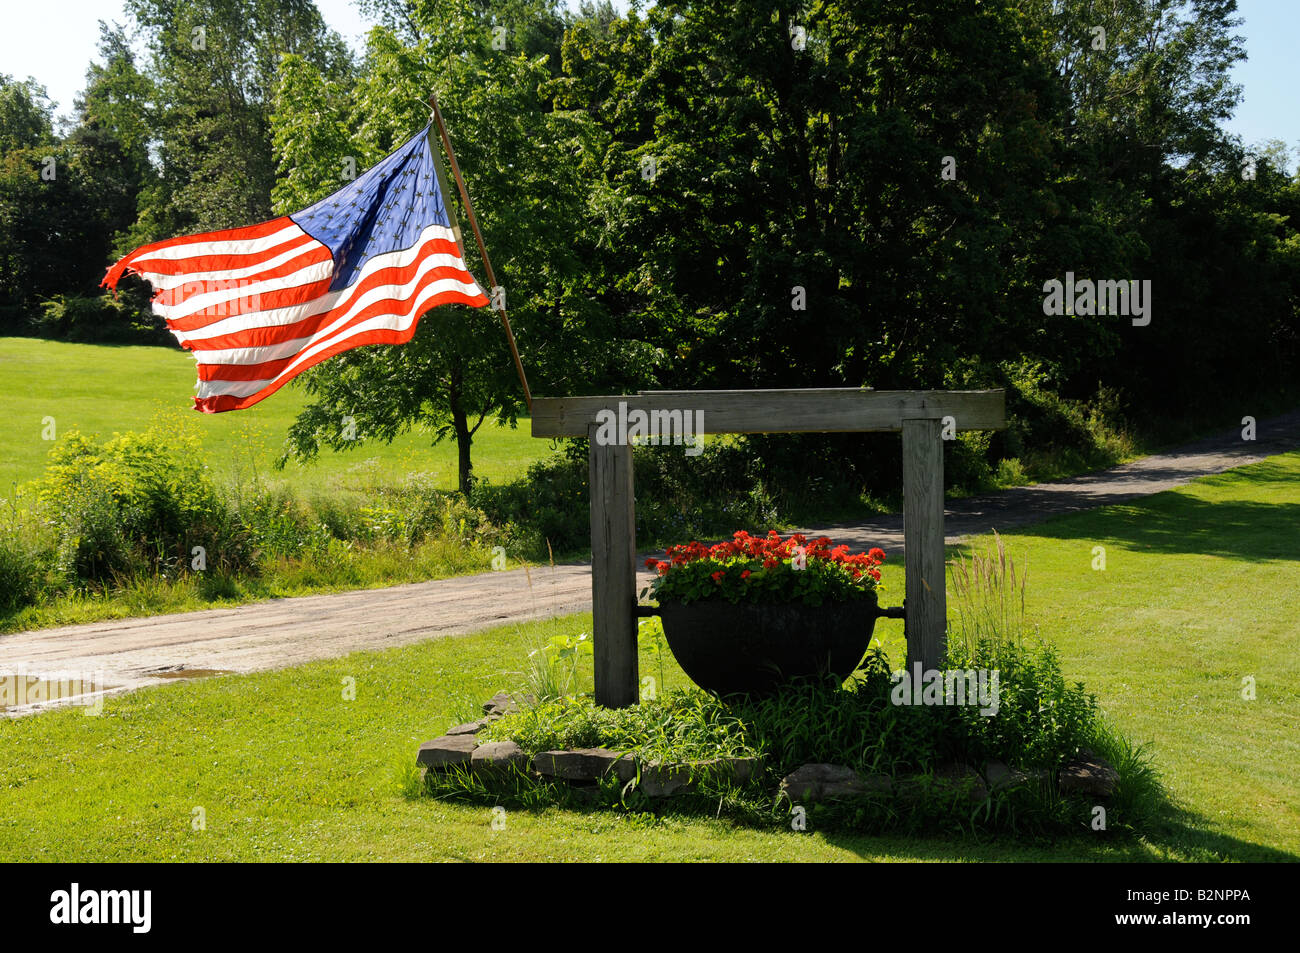 Die Stars And Stripes fliegen stolz am Tor zu einer Ranch im US-Bundesstaat, NY. Stockfoto